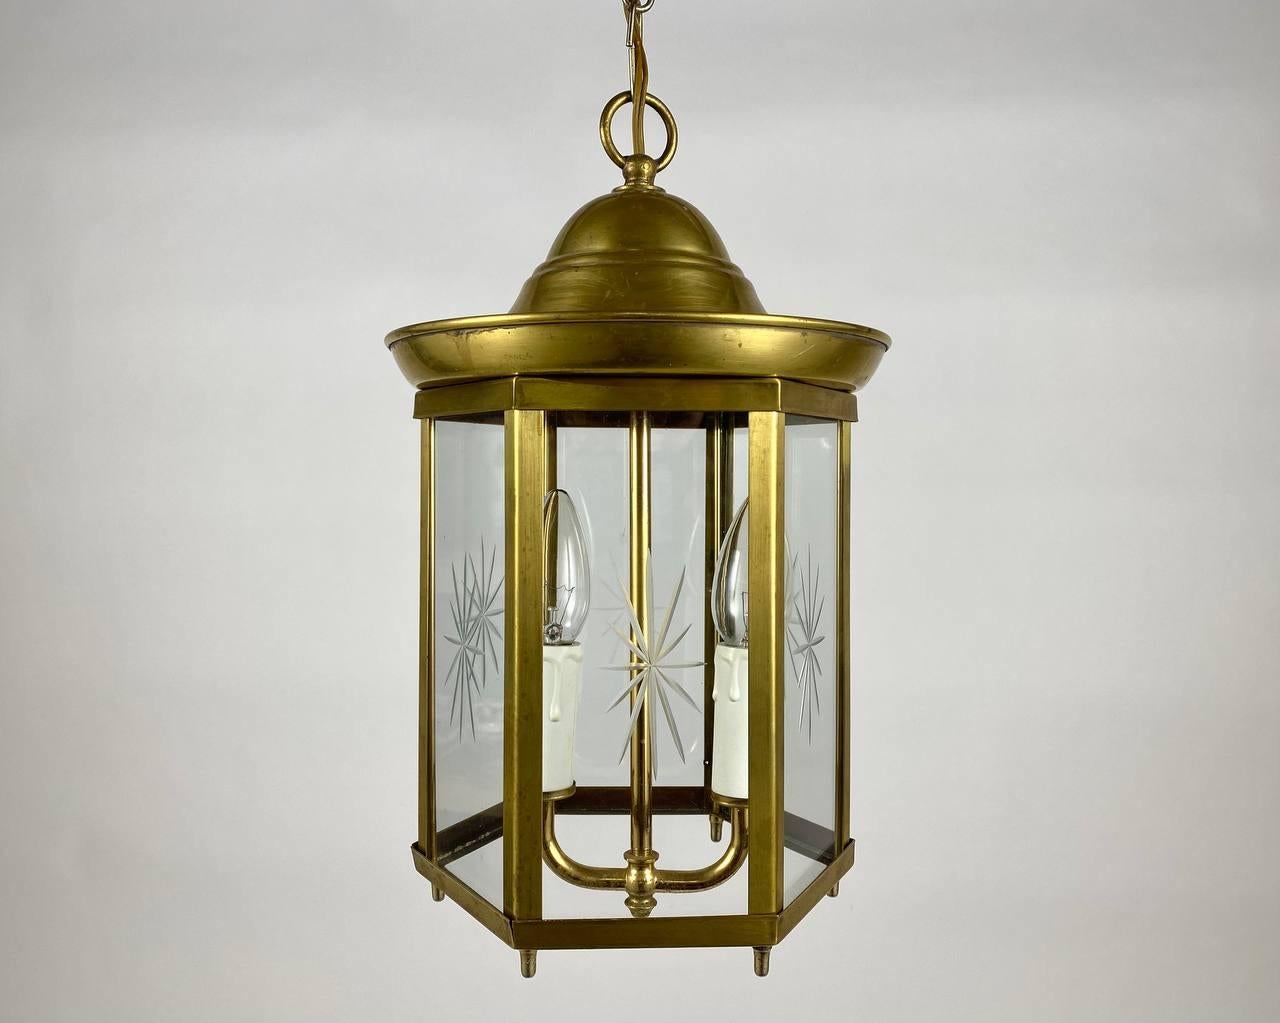 Lustre artisanal vintage - lanterne pour deux points lumineux fabriqué dans les années 1980. 

La lanterne de plafond est une combinaison étonnante de la garantie du fabricant et du design du luminaire.

L'abat-jour hexagonal est livré avec les